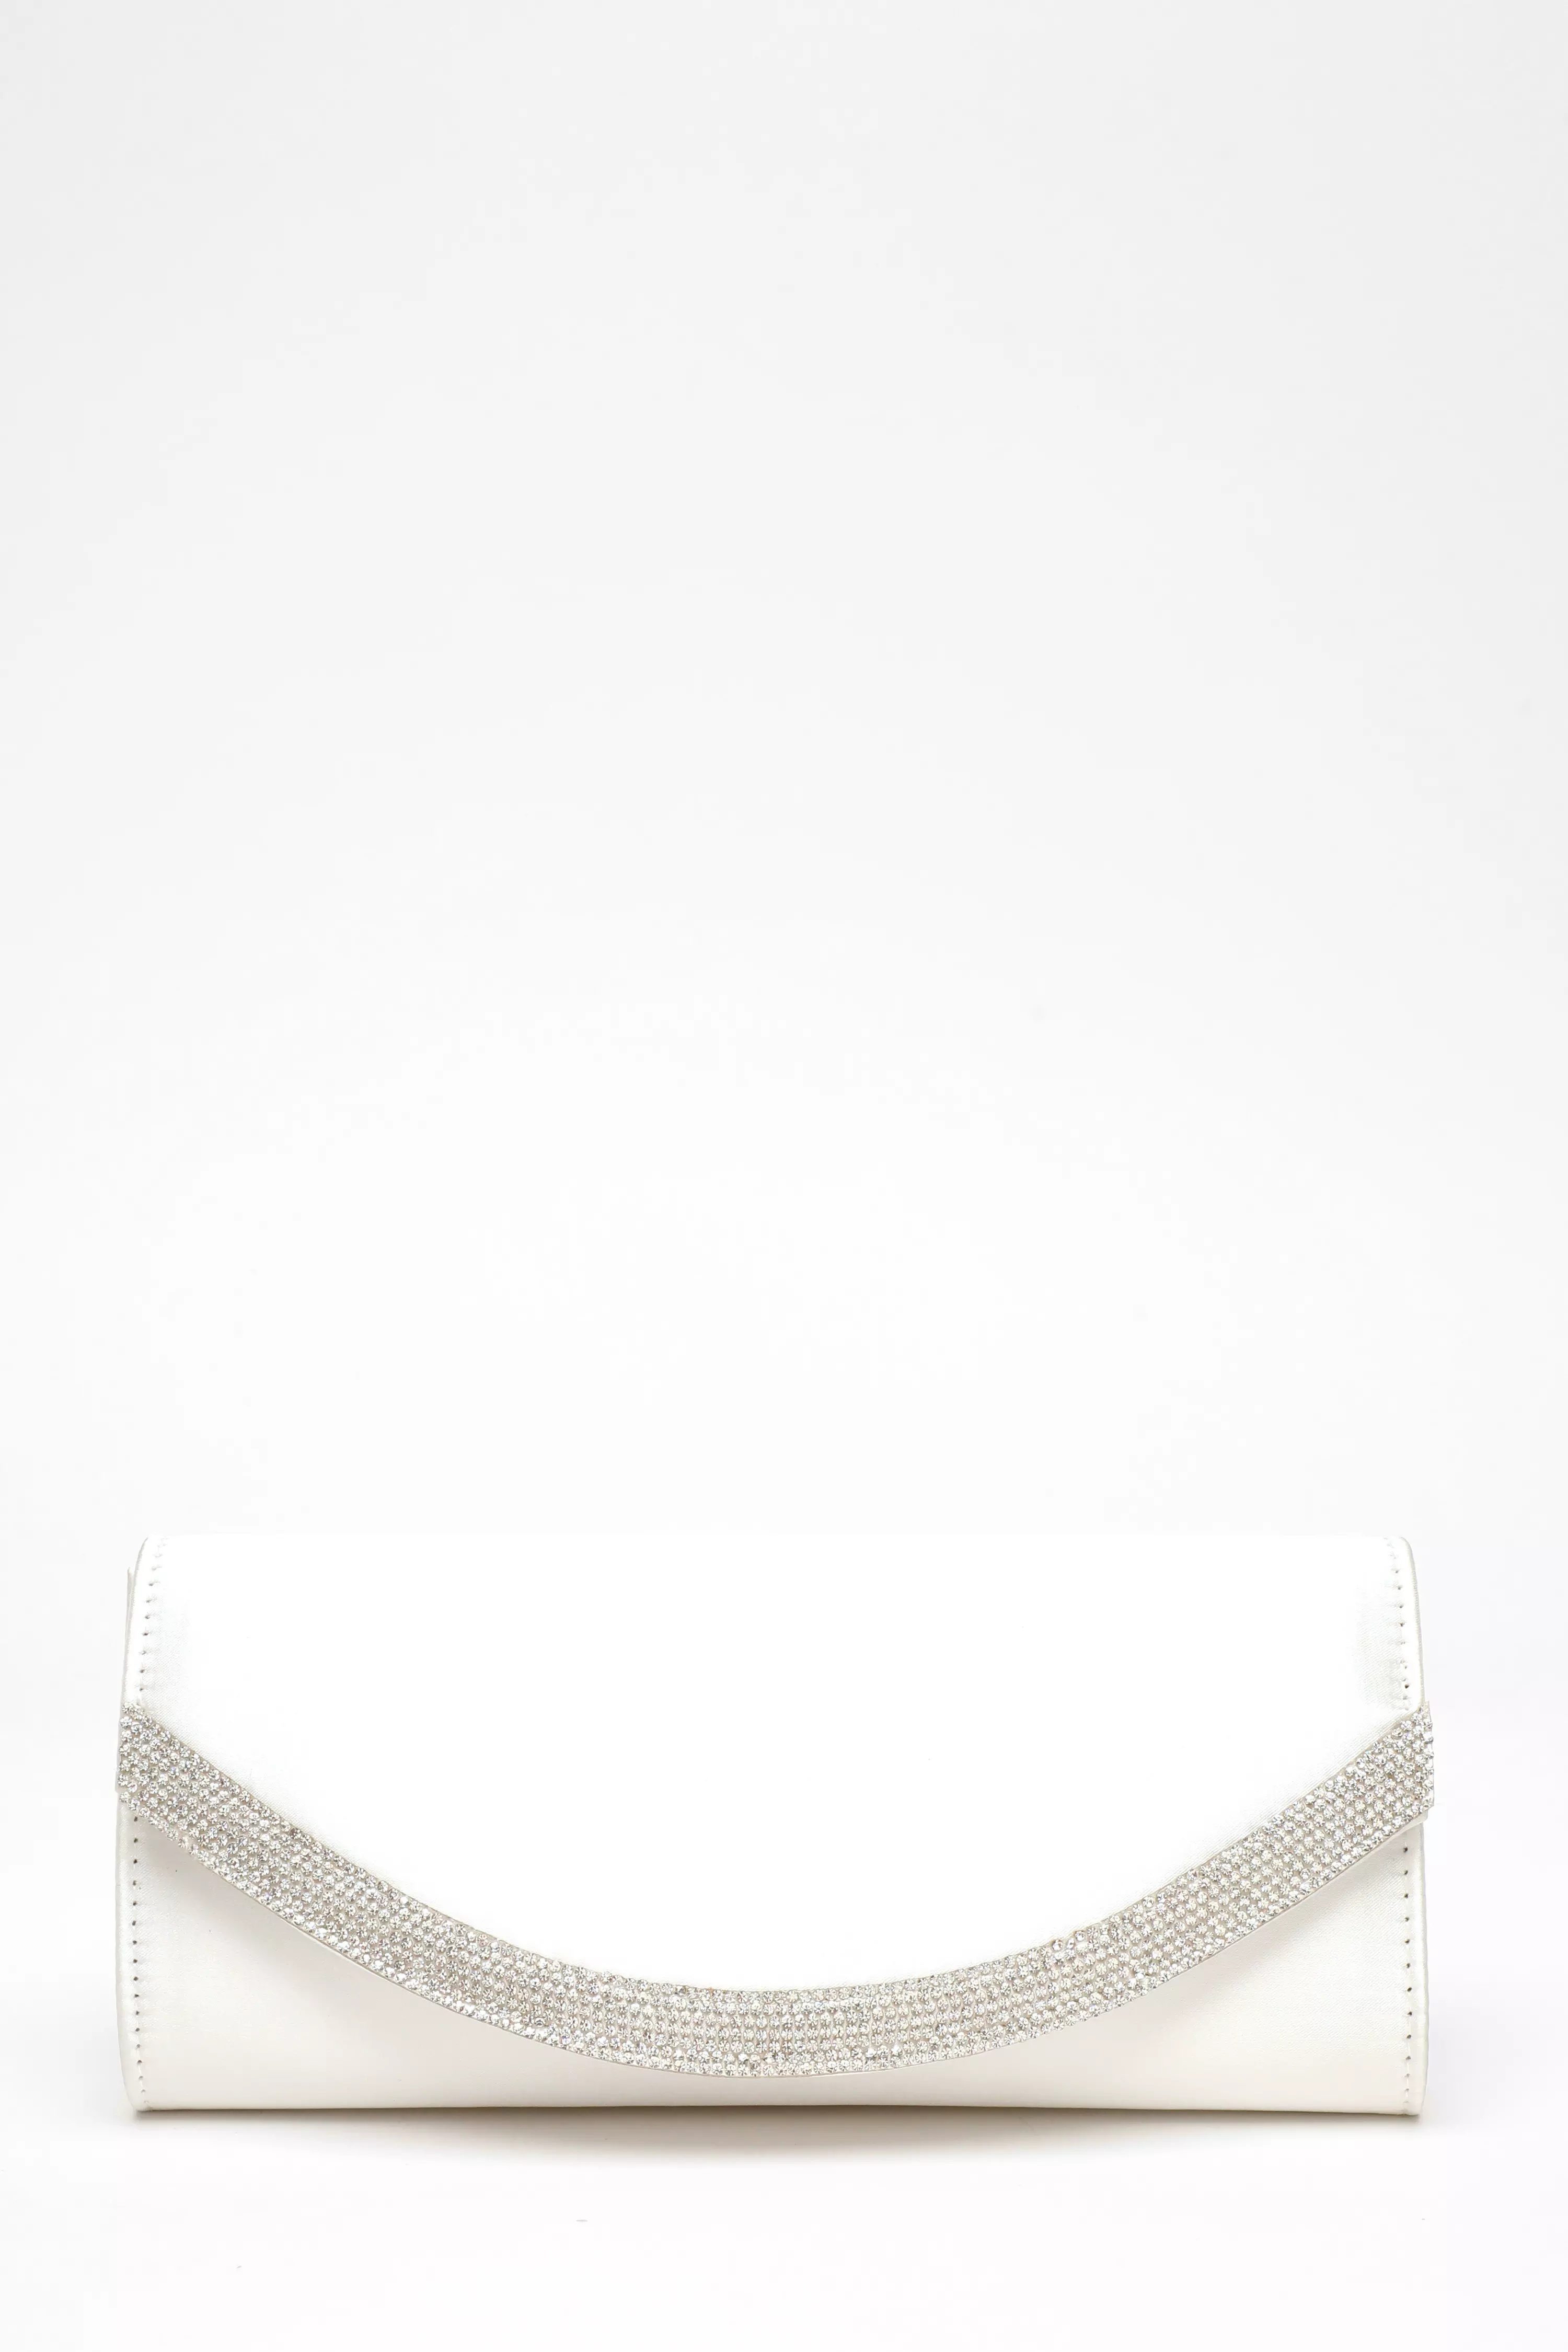 White Satin Embellished Clutch Bag